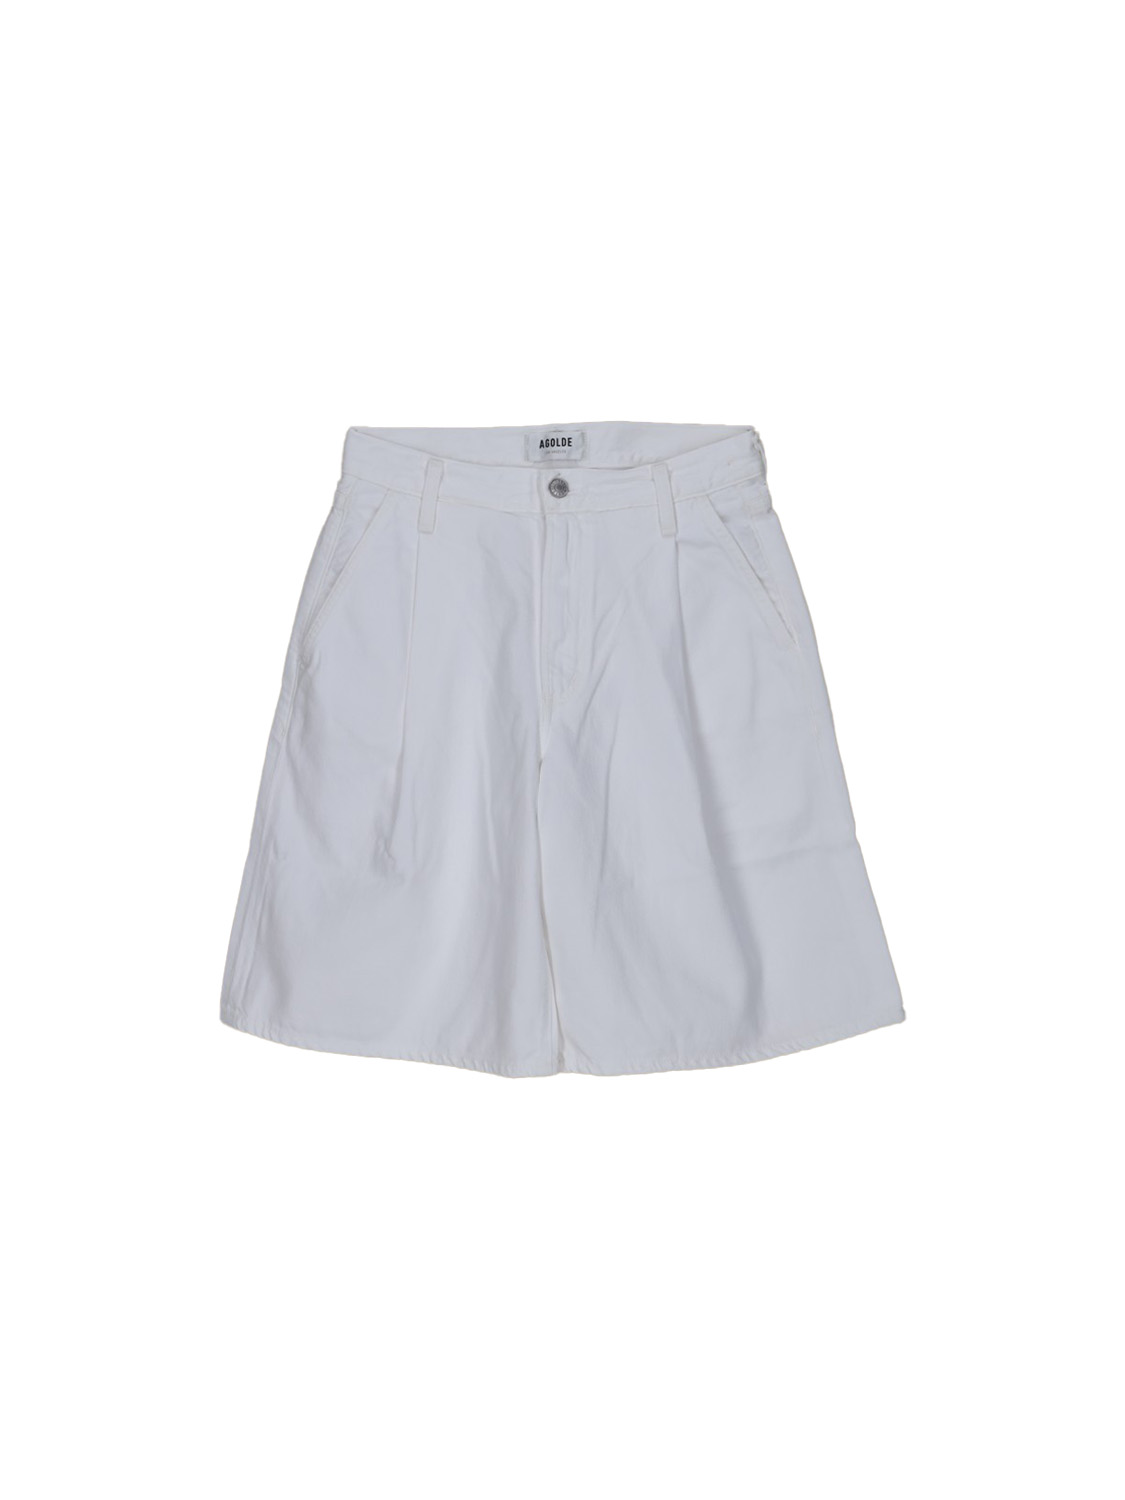 Agolde Oversized Shorts  blanco 26